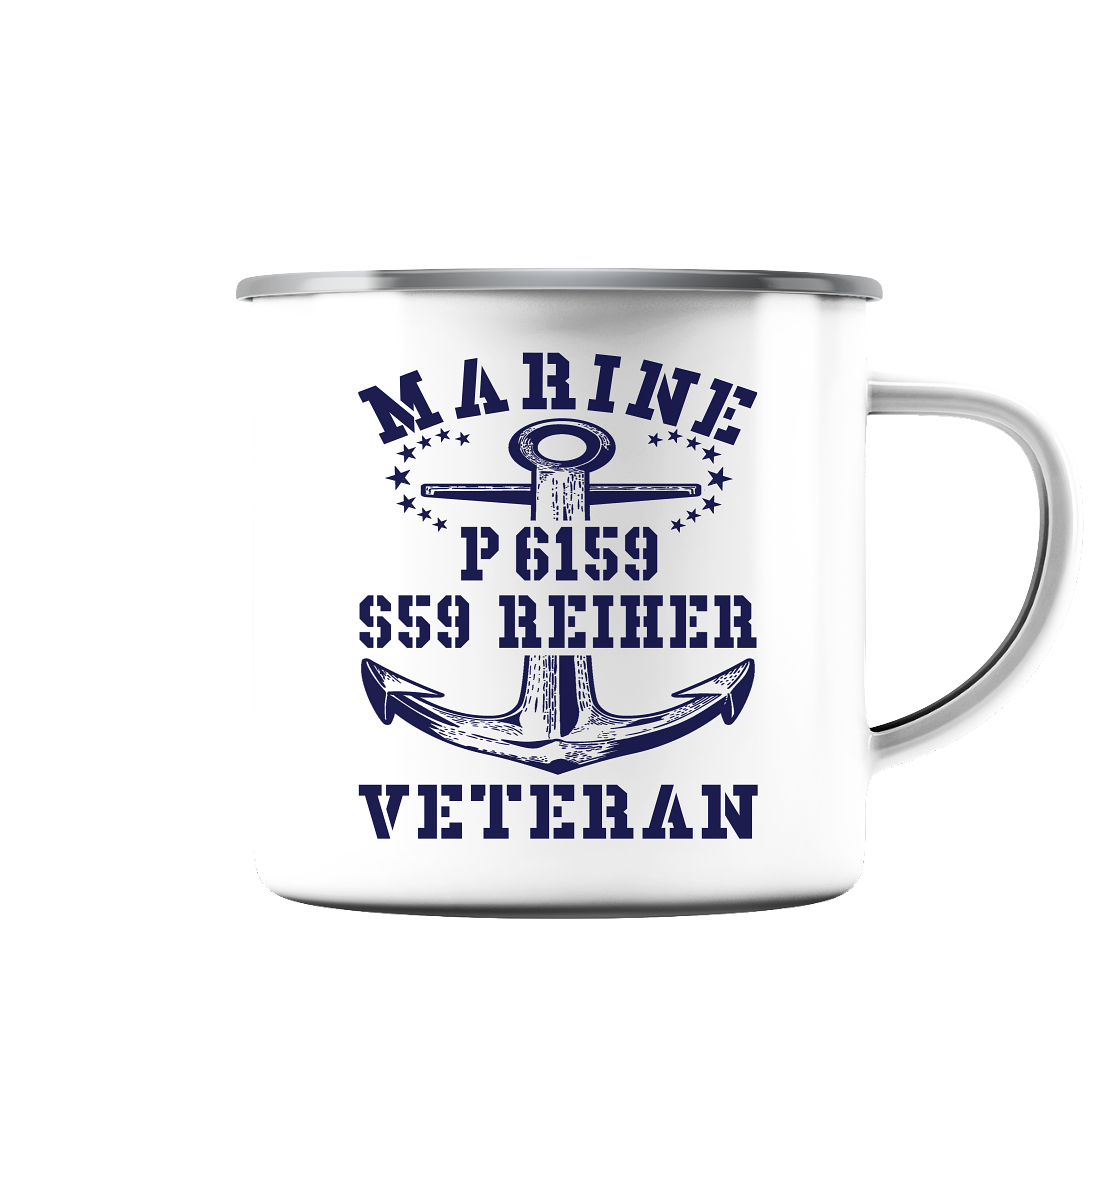 P6159 S59 REIHER Marine Veteran - Emaille Tasse (Silber)